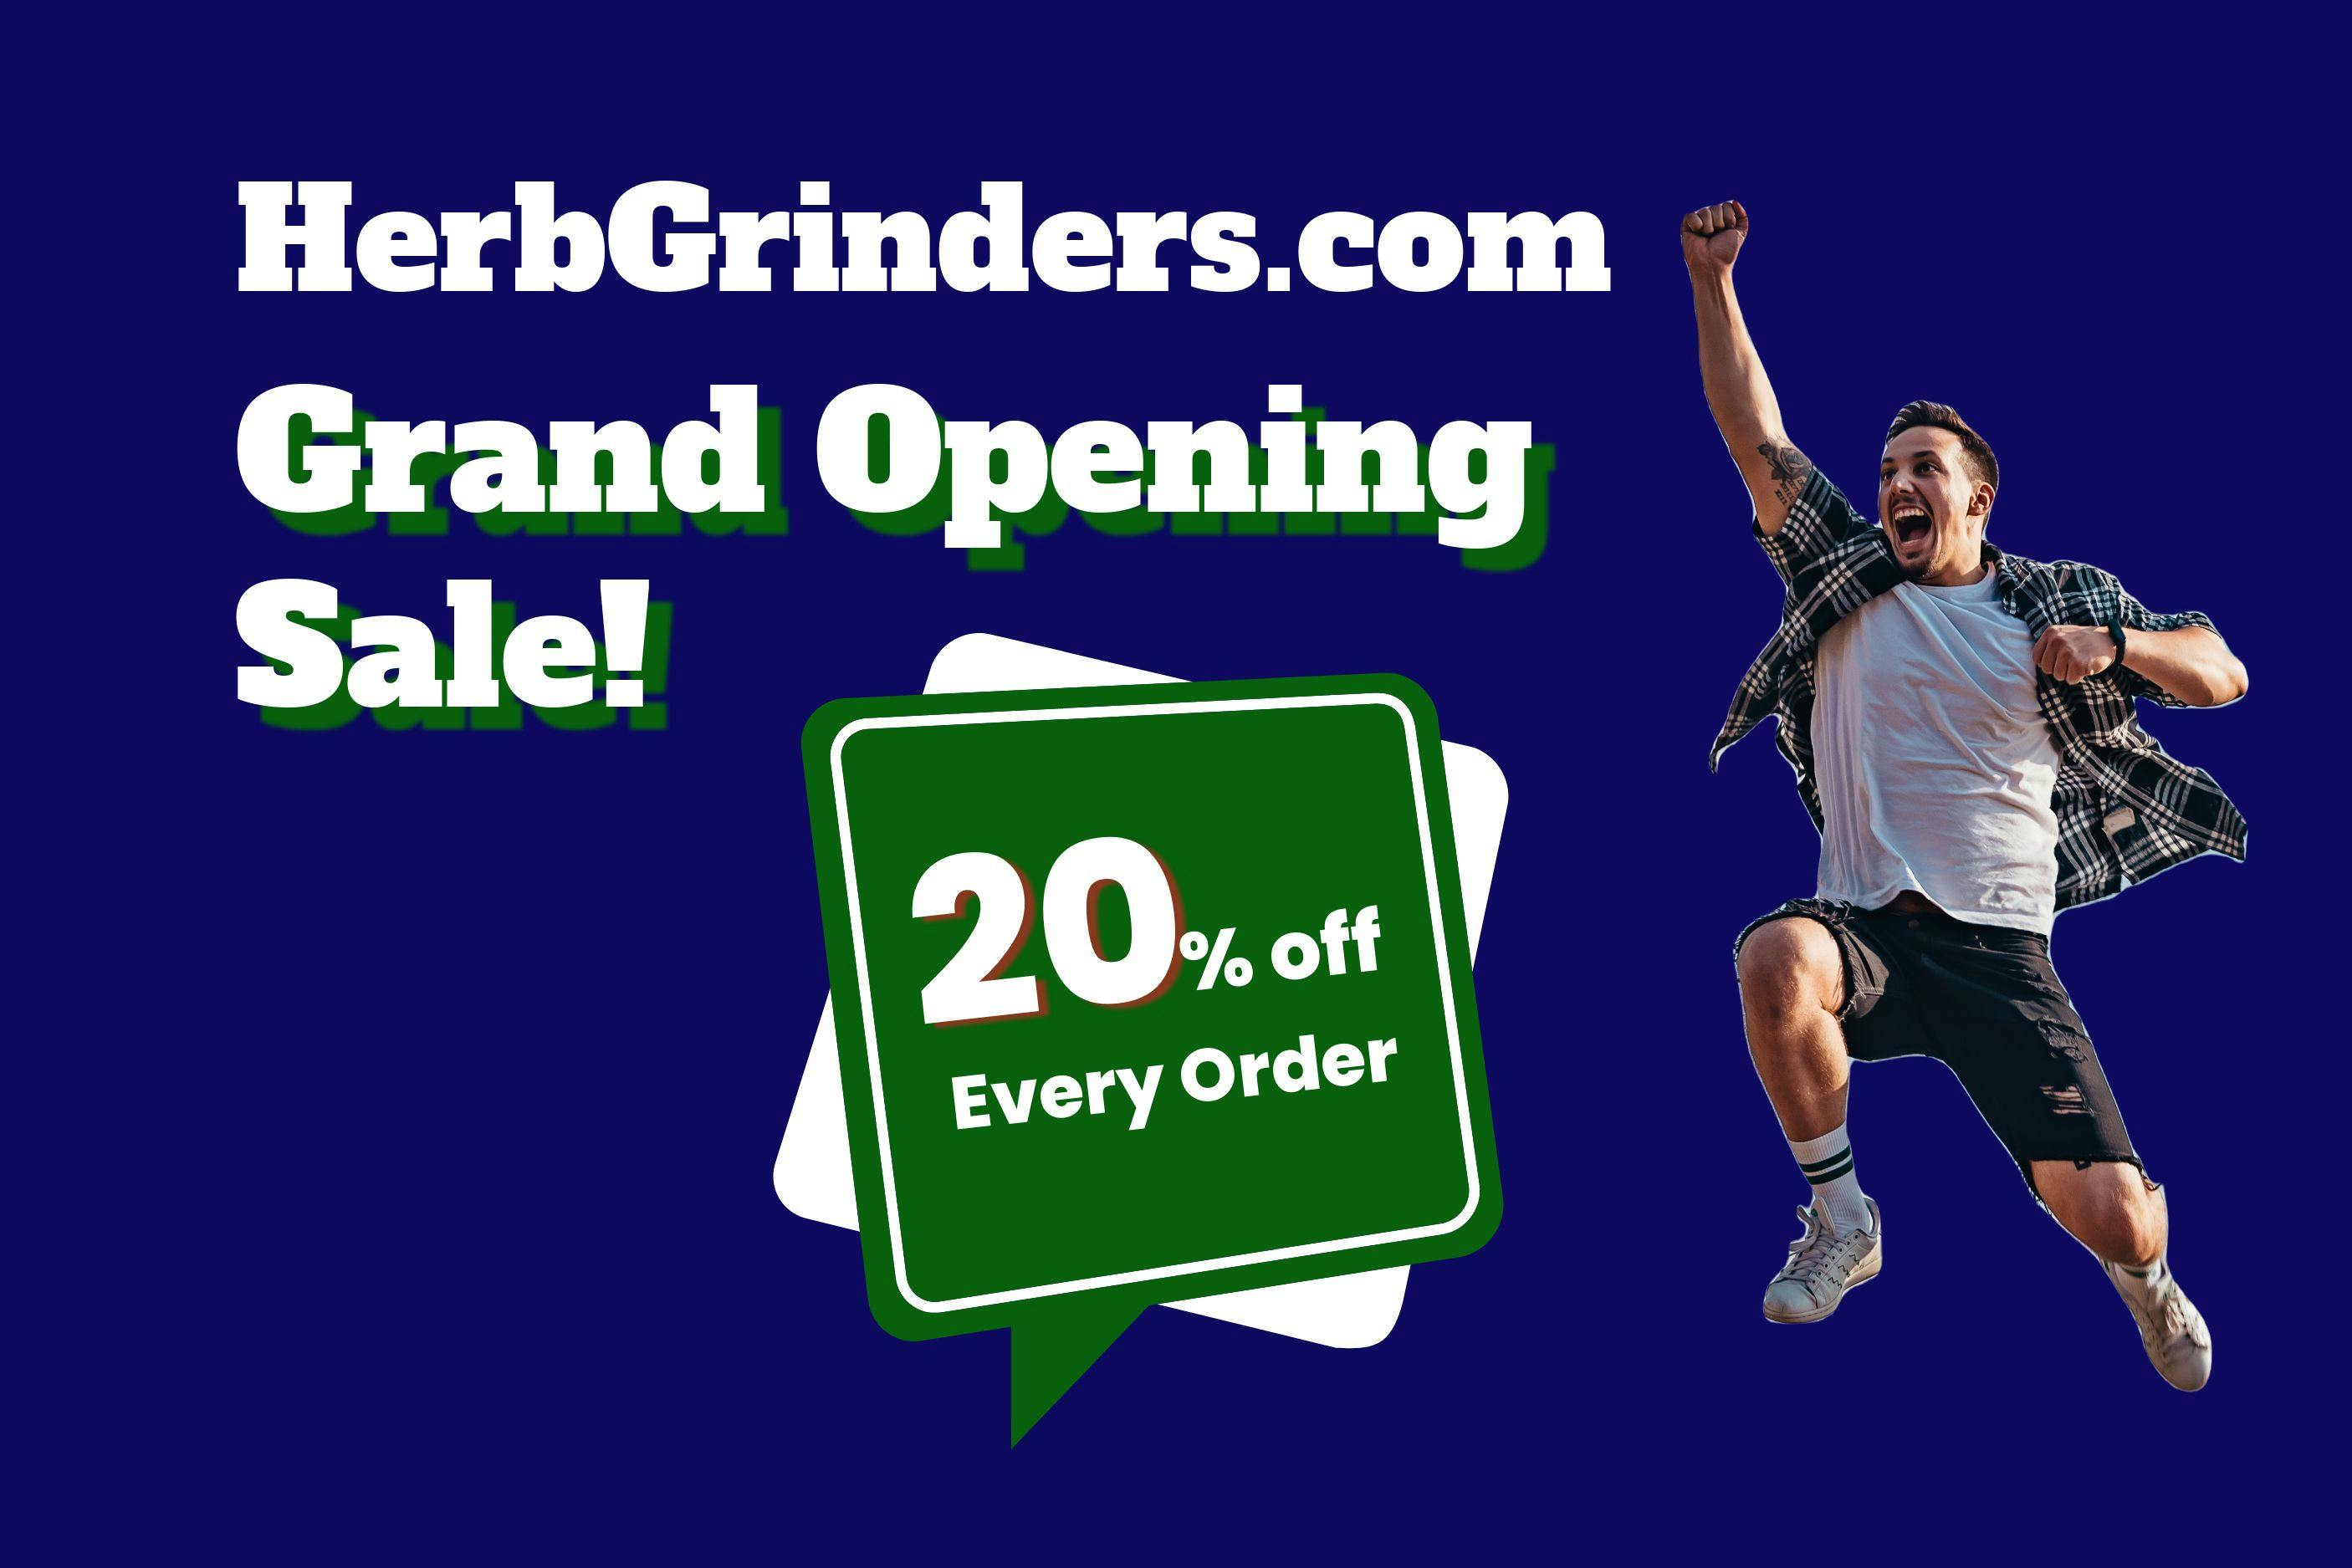 Herb grinders Grand Opening